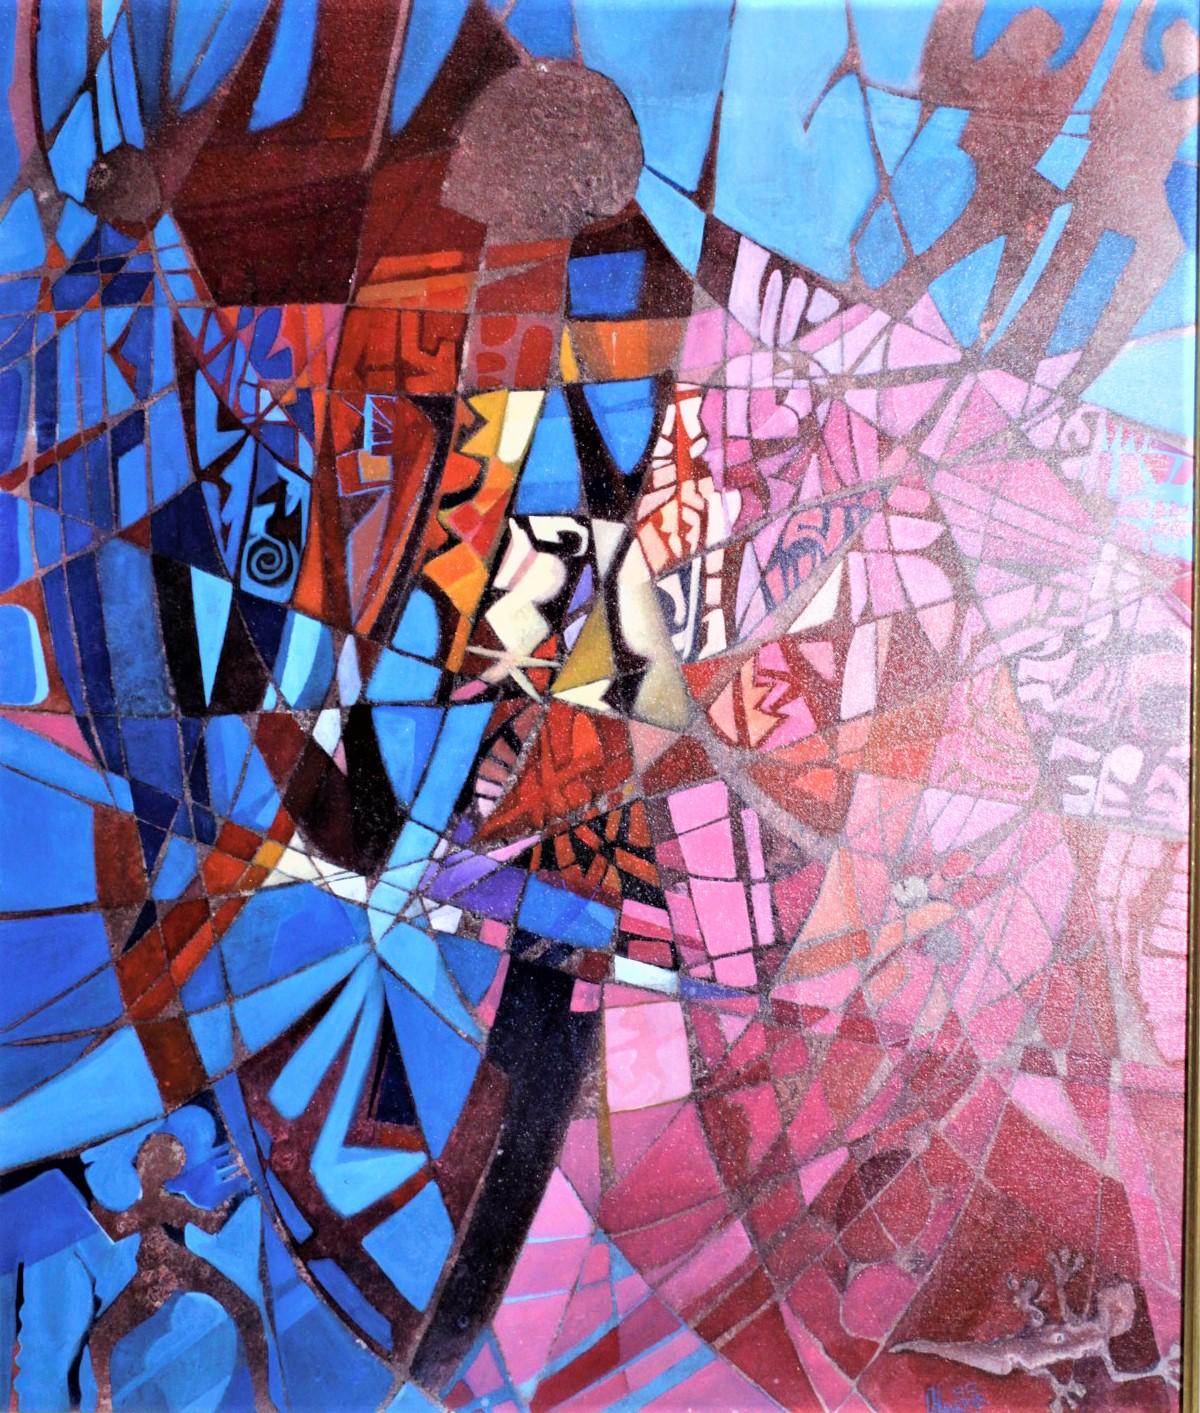 Cette grande peinture abstraite bien exécutée a été réalisée par Carlisle Ainsworth Harris de Trinidad en 1990. Cette peinture originale est une acrylique encadrée sur toile et met en évidence la signature de Harris, qui utilise des couleurs vives,